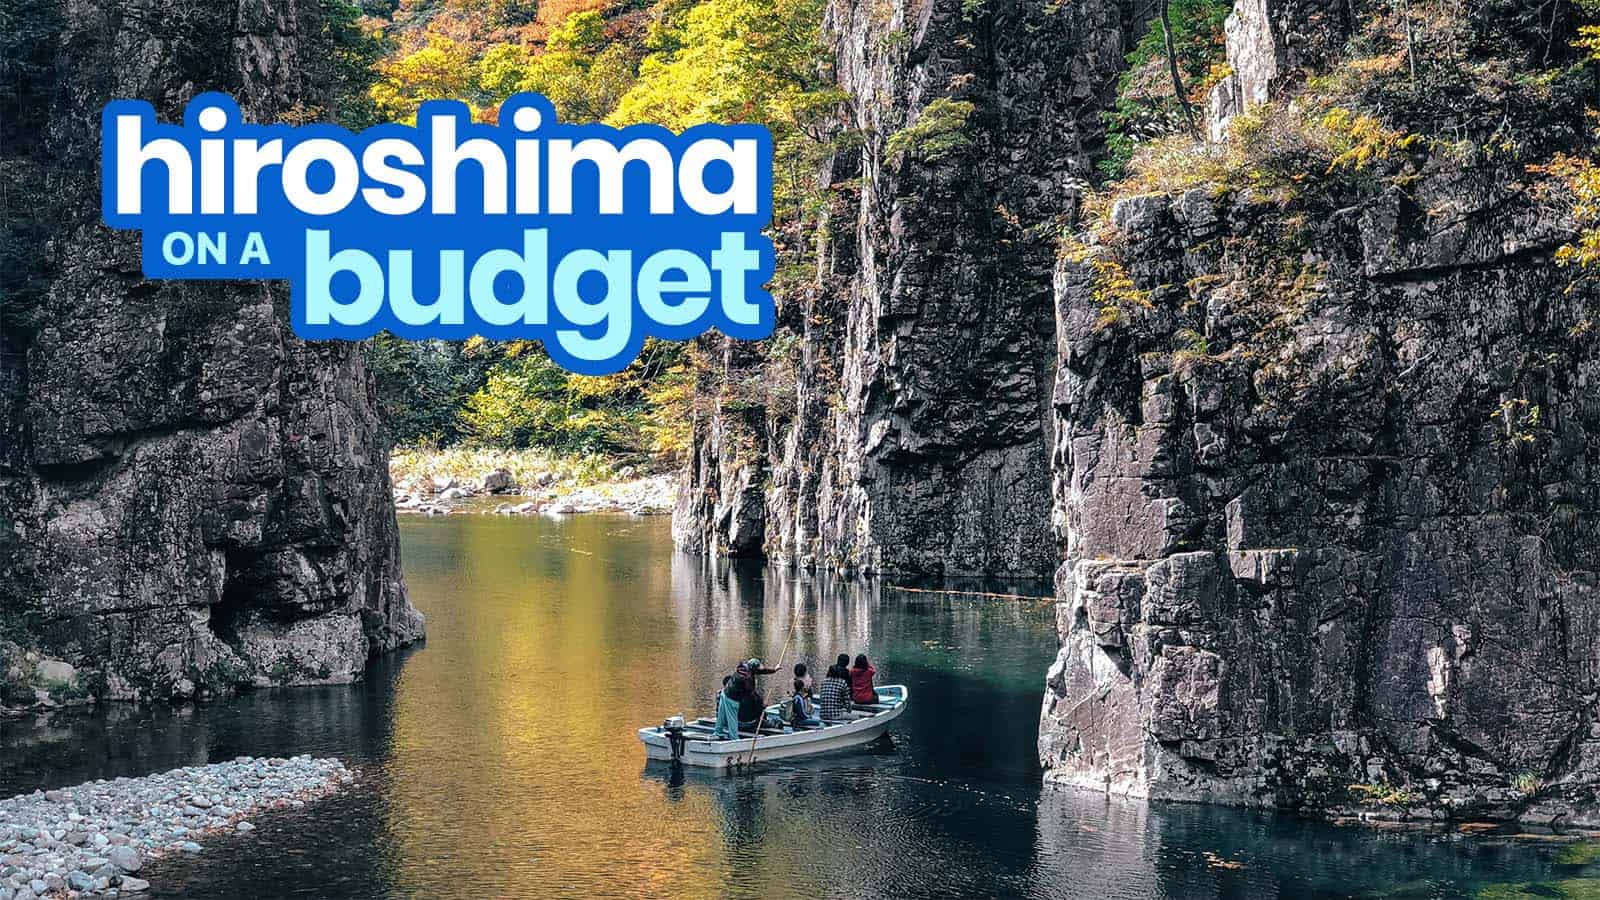 广岛旅游指南与预算行程